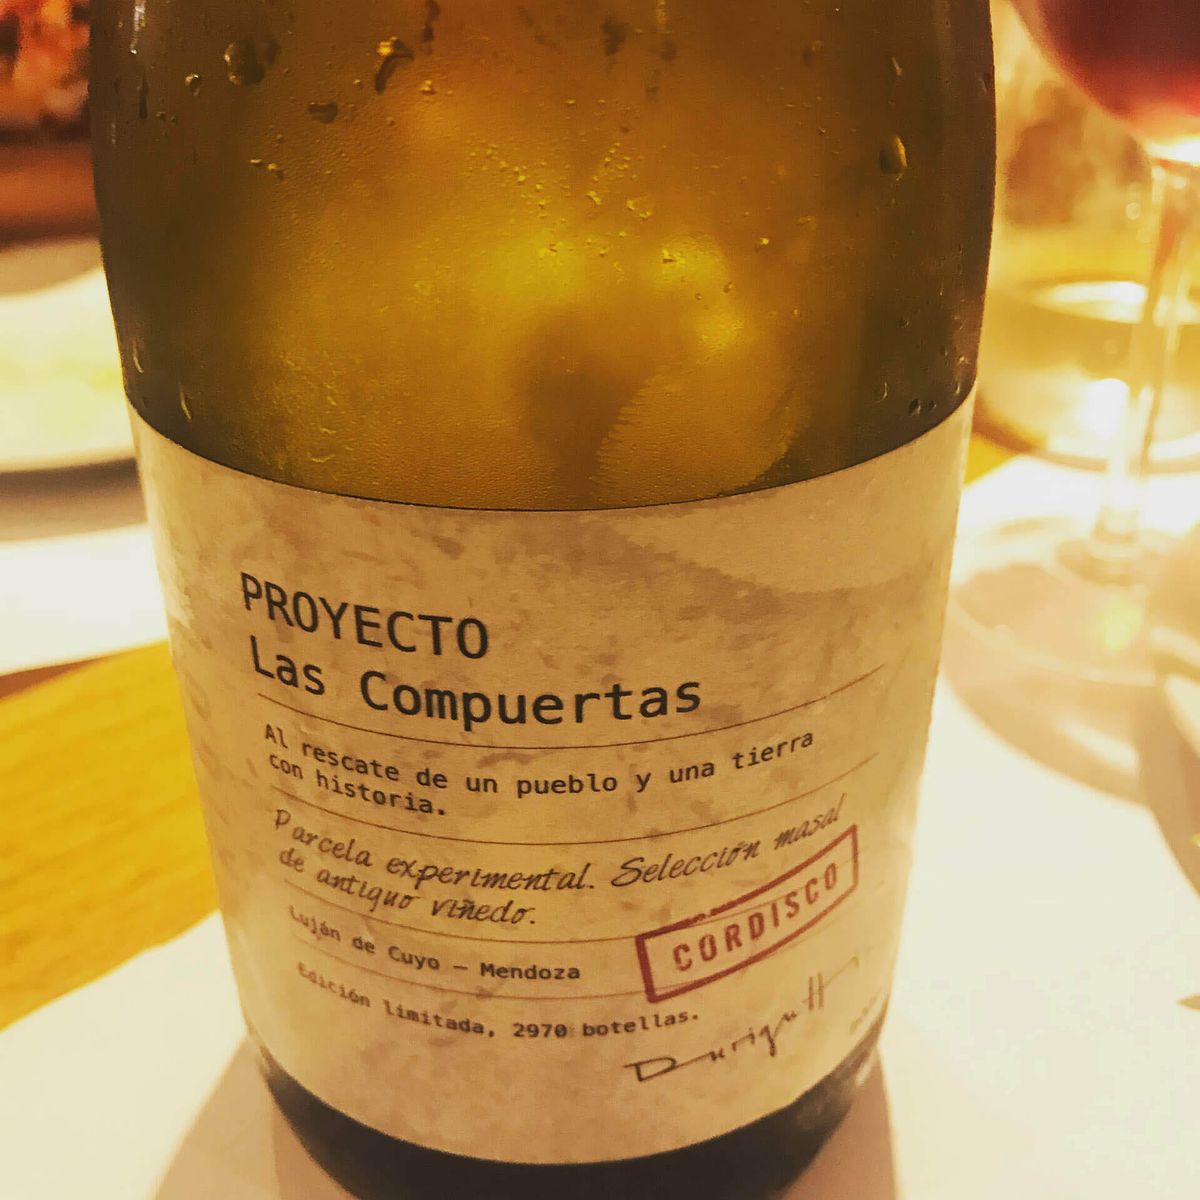 Cordisco, okusno lahkotno rdeče vino vinarjev Durigutti